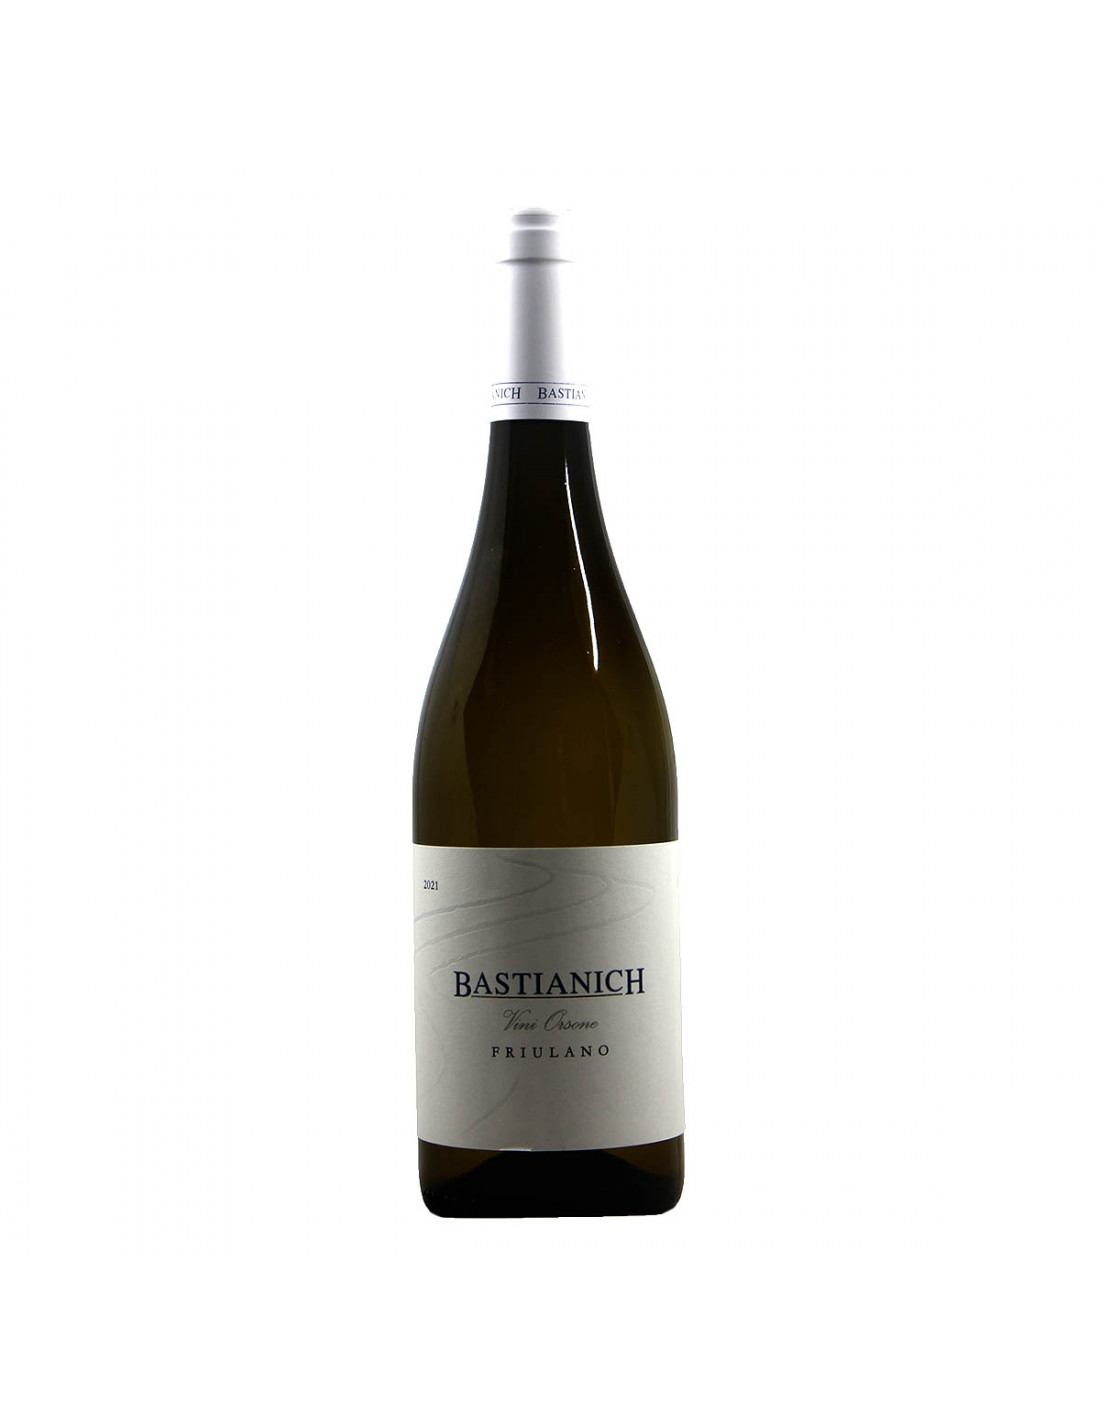 Bastianich Friulano 2021 Grandi Bottiglie